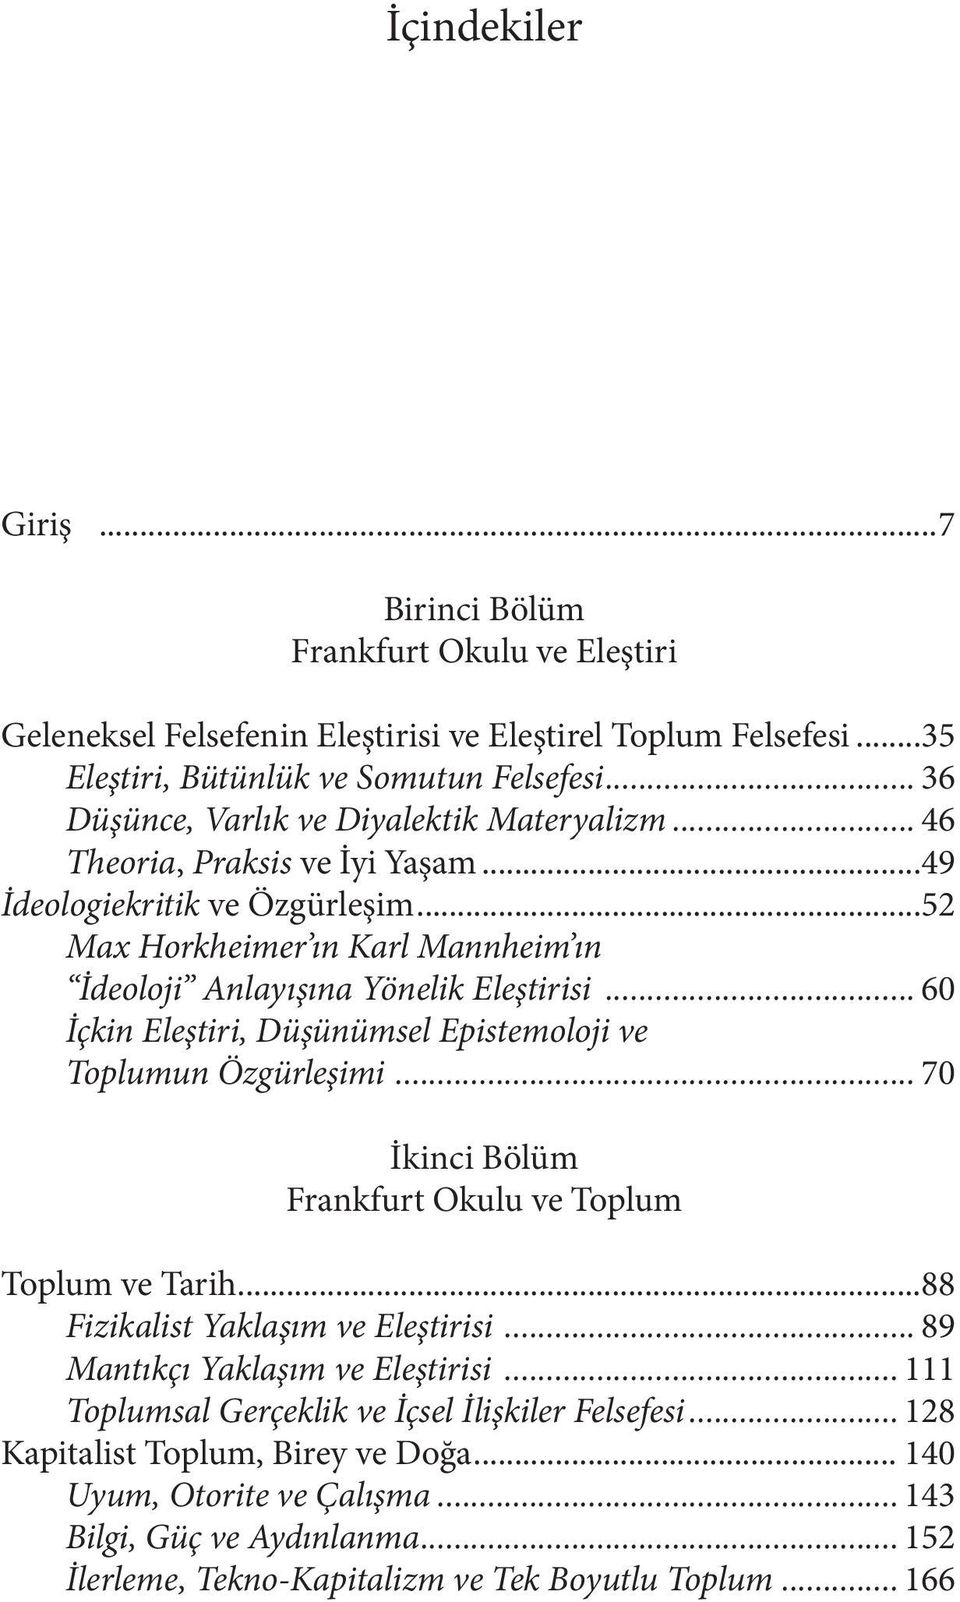 .. 60 İçkin Eleştiri, Düşünümsel Epistemoloji ve Toplumun Özgürleşimi... 70 İkinci Bölüm Frankfurt Okulu ve Toplum Toplum ve Tarih...88 Fizikalist Yaklaşım ve Eleştirisi.